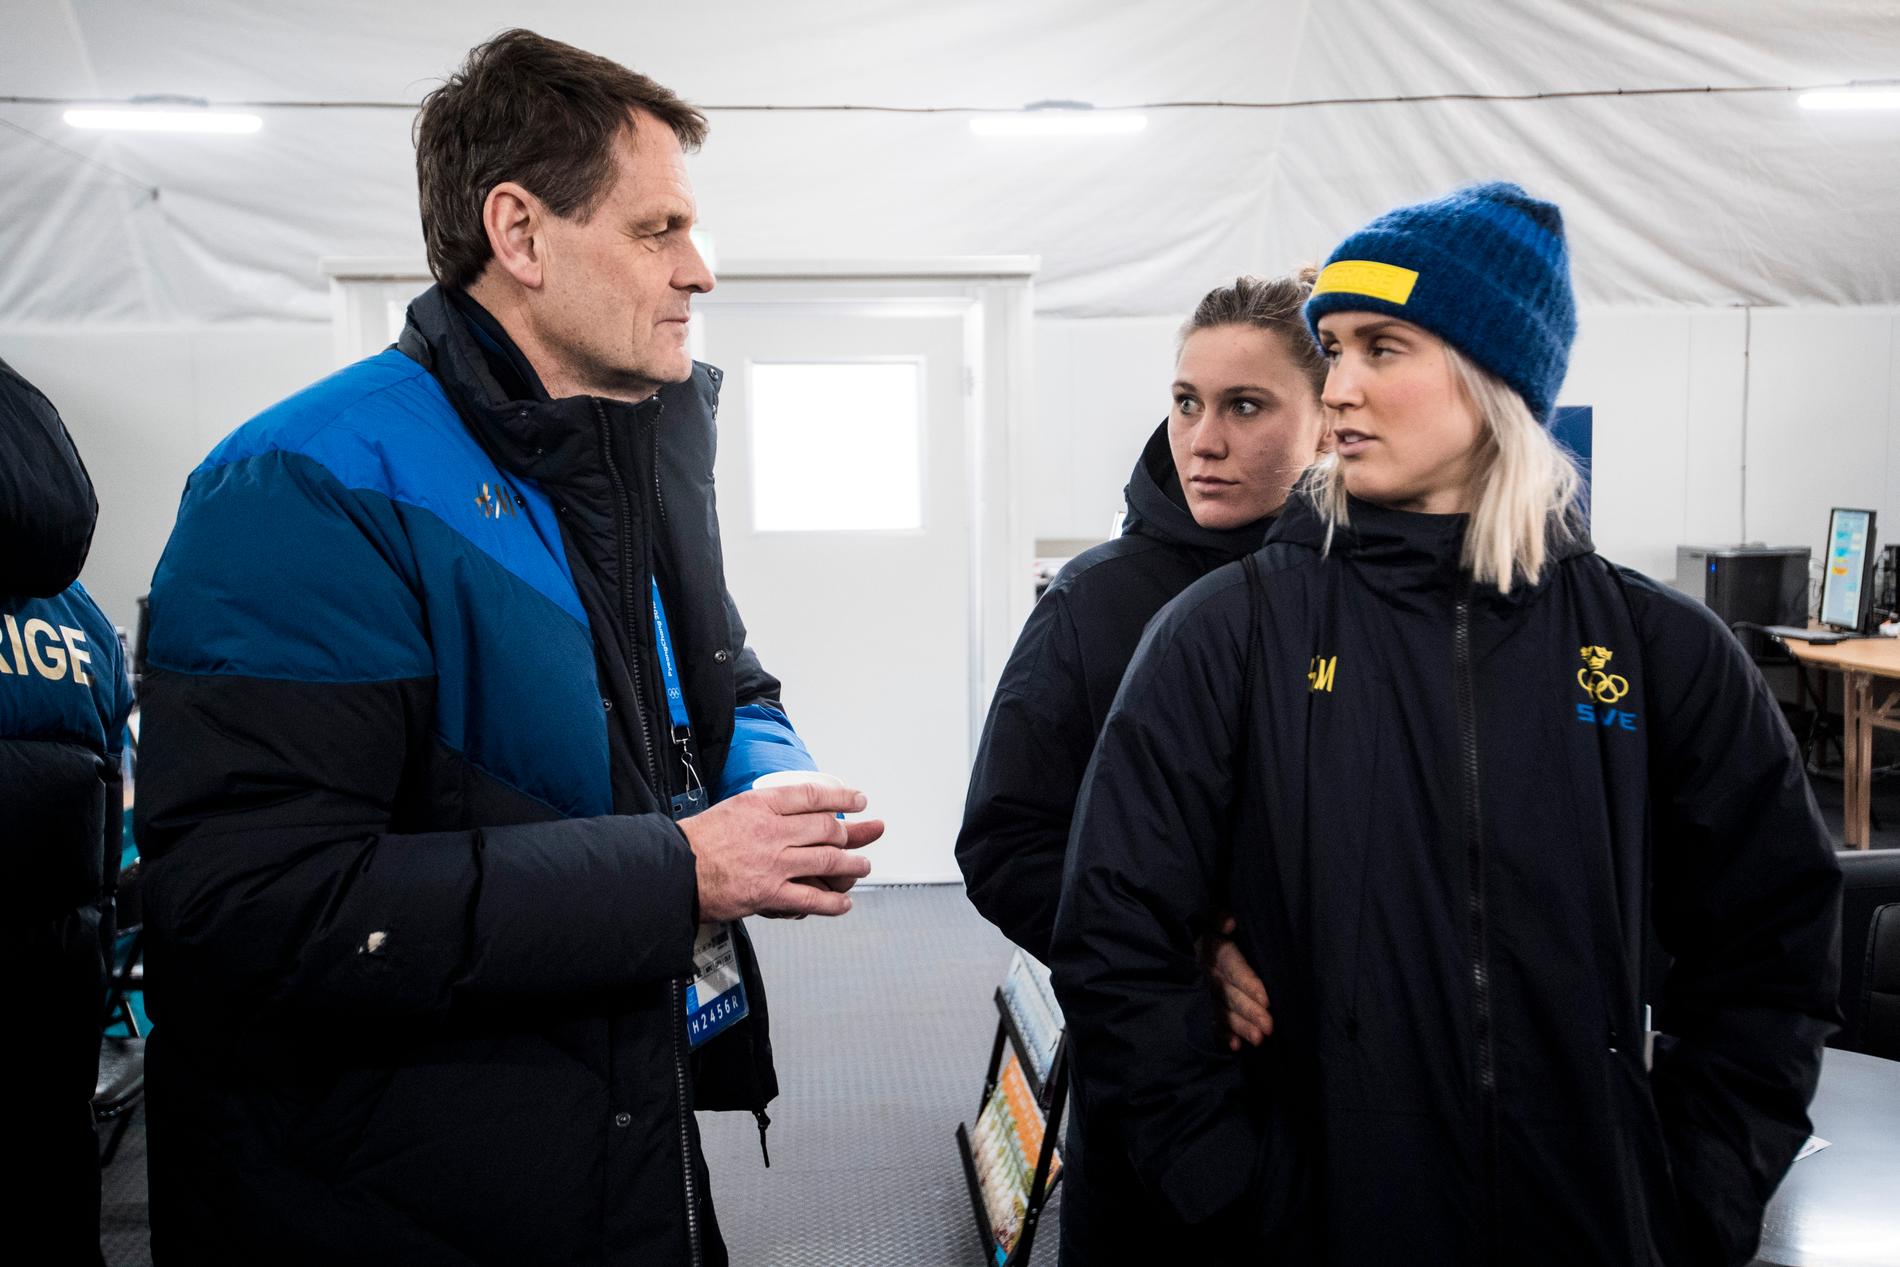 Peter Reinebo i OS-byn, här med alpinåkarna Estelle Alphand och Emelie Vikström.